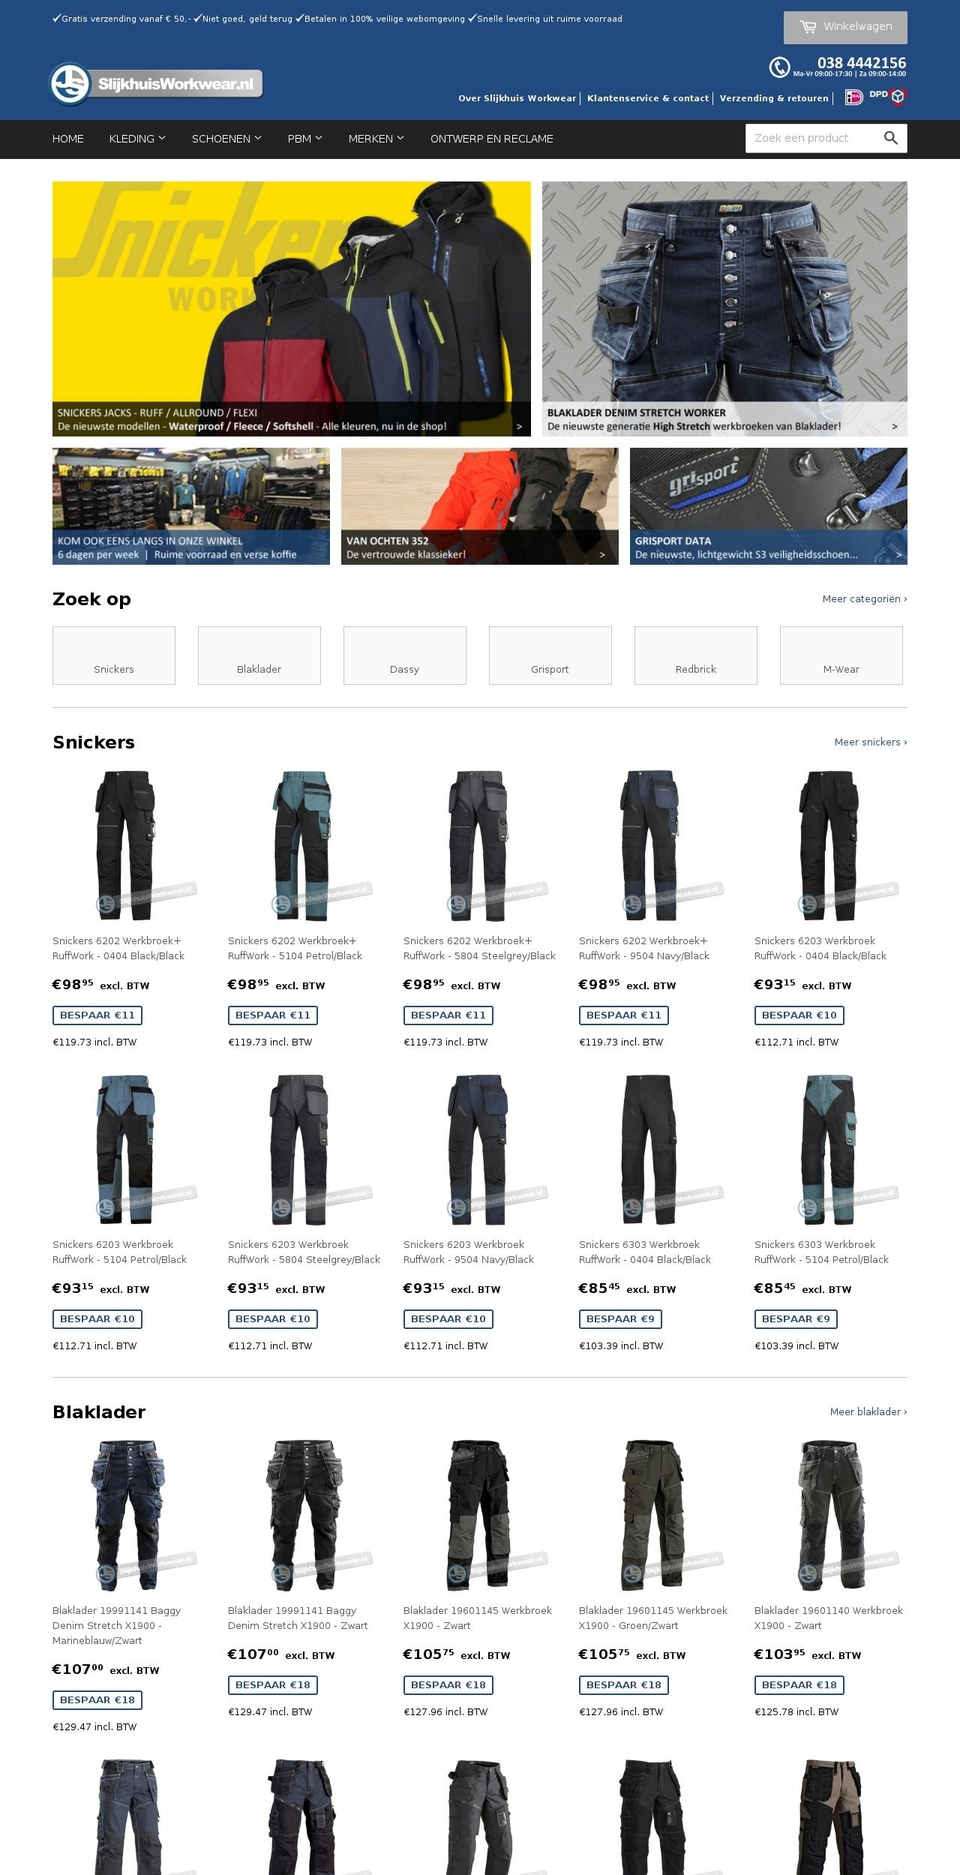 slijkhuisworkwear.nl shopify website screenshot